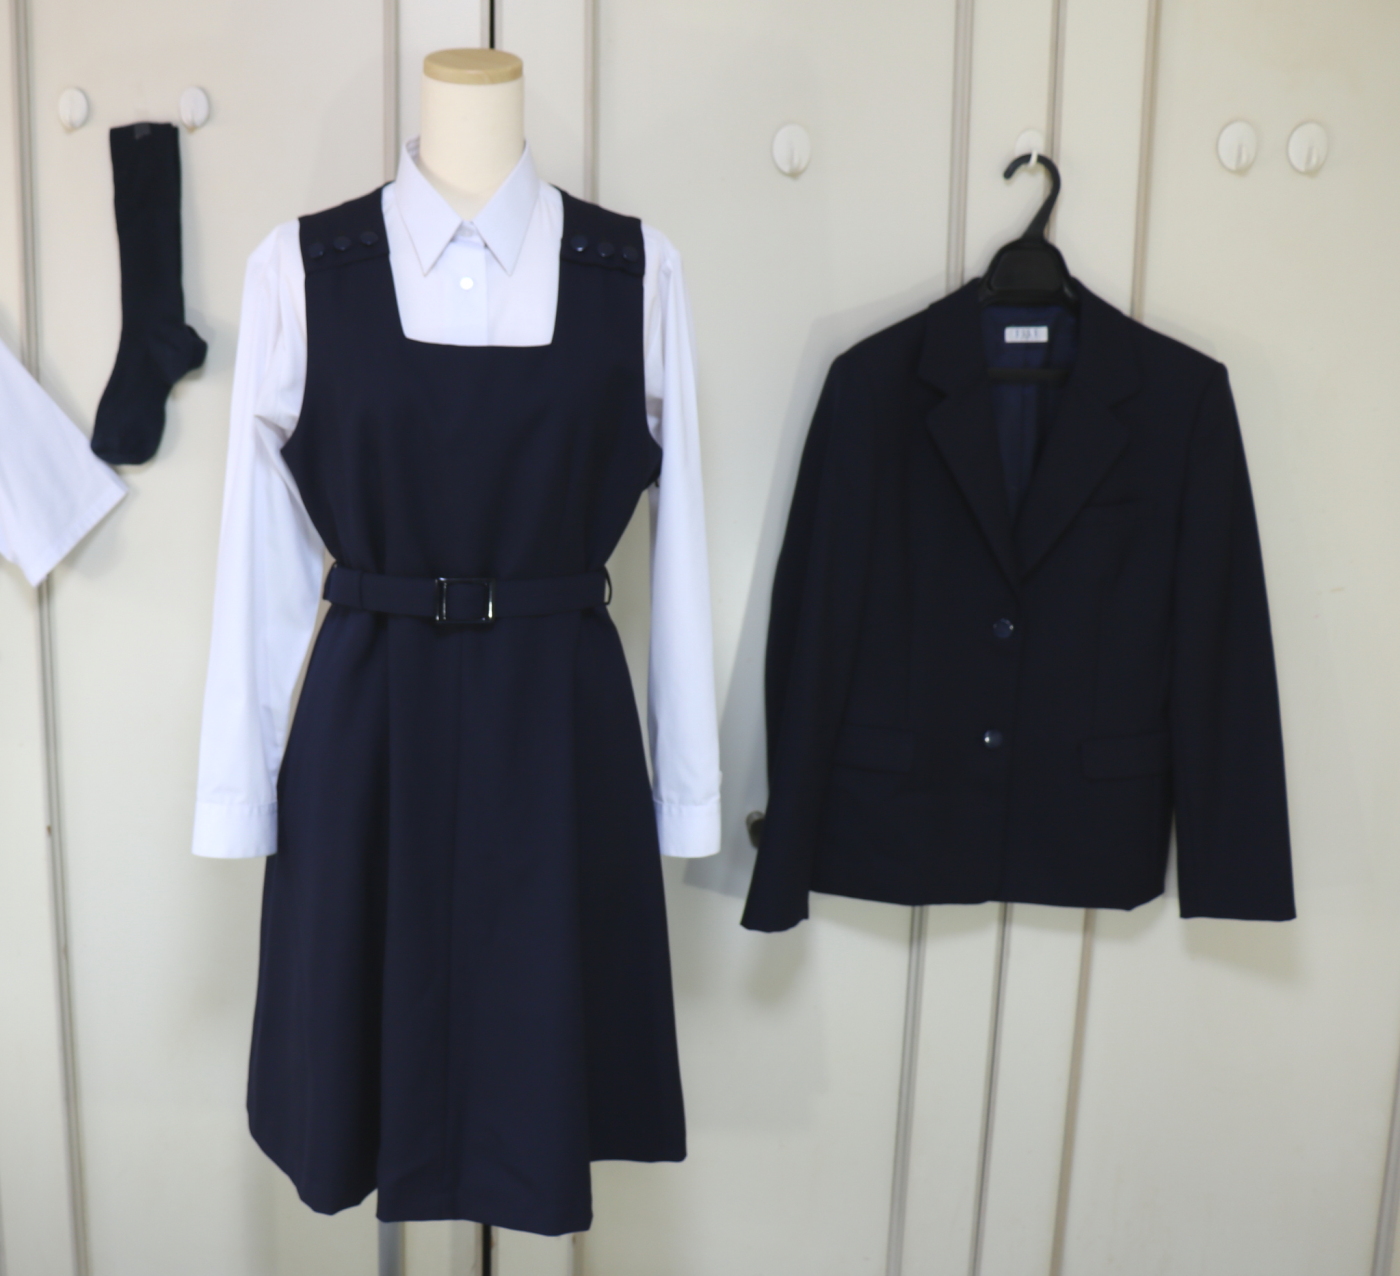 埼玉県熊谷市 埼玉県立熊谷女子高等学校のブレザー制服を買取致しました 制服買取東京